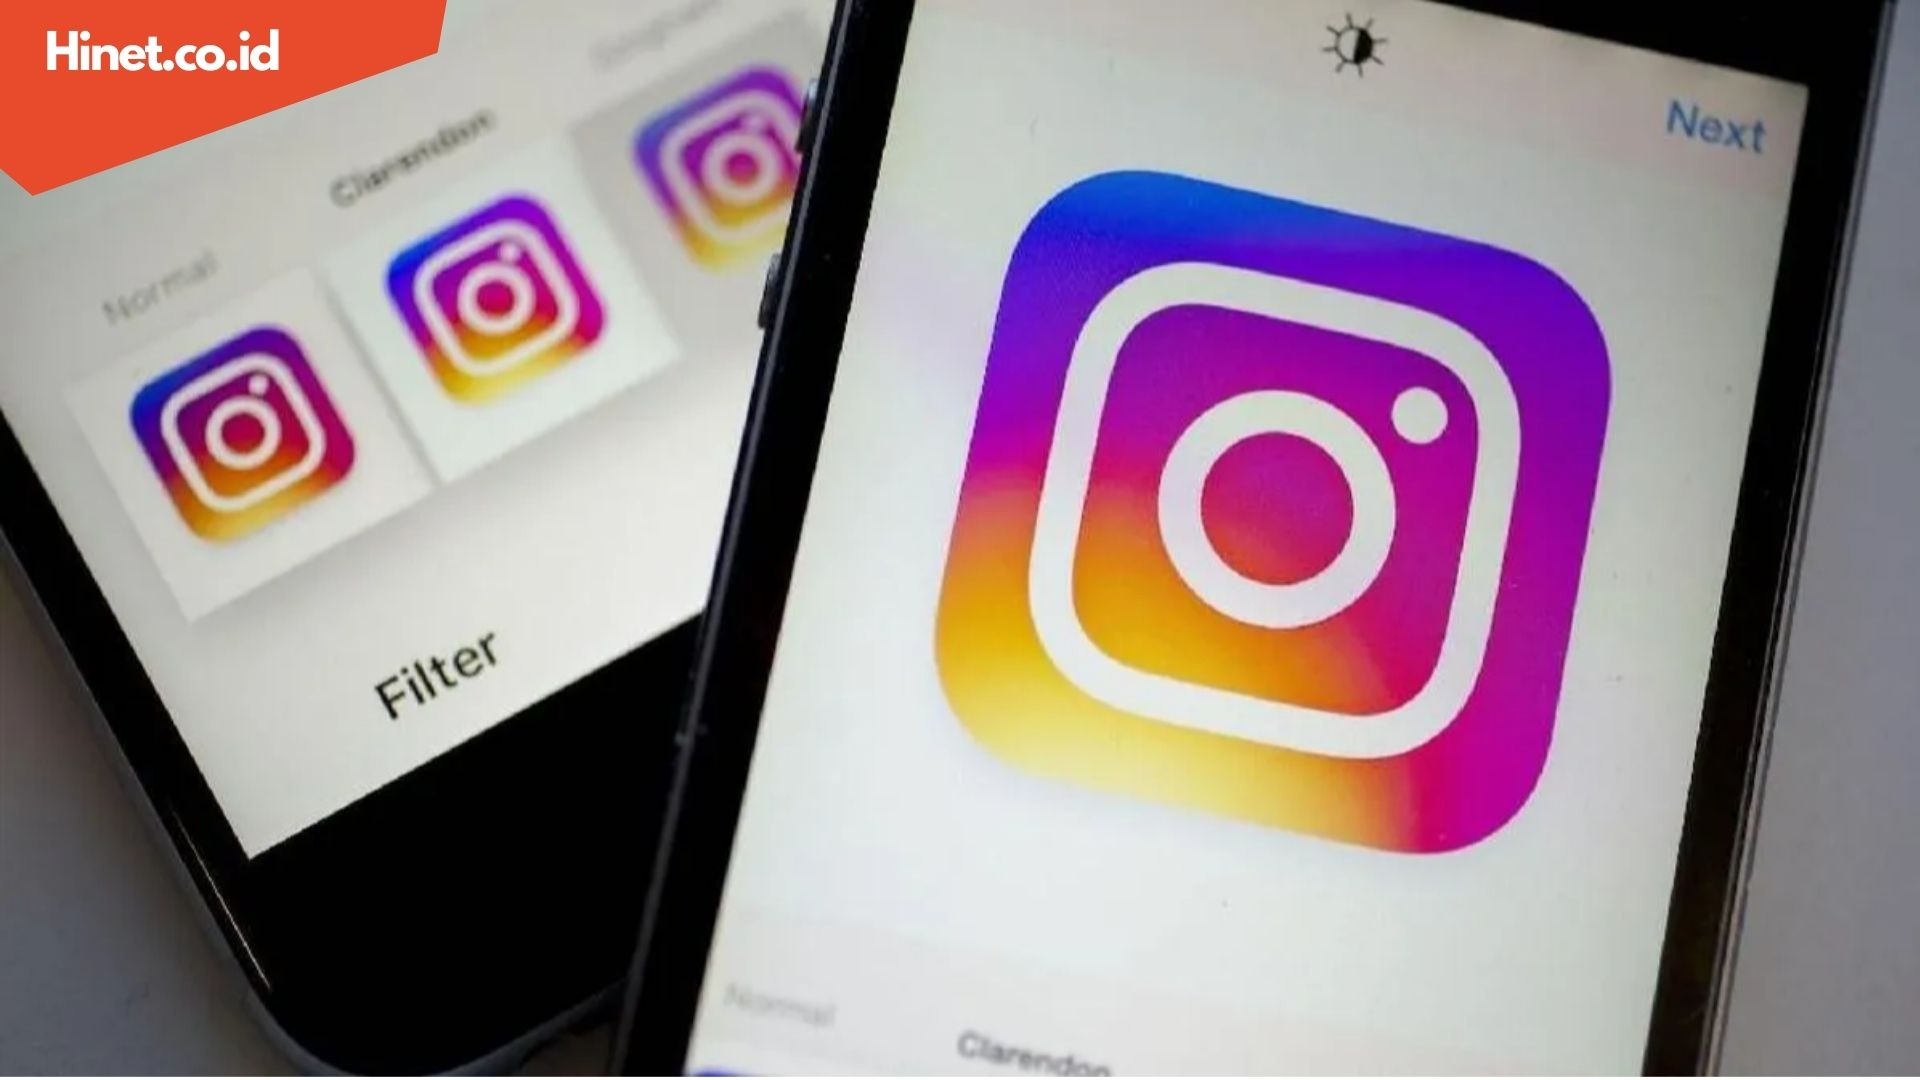 Cara Save Video Instagram dengan Mudah dan Cepat